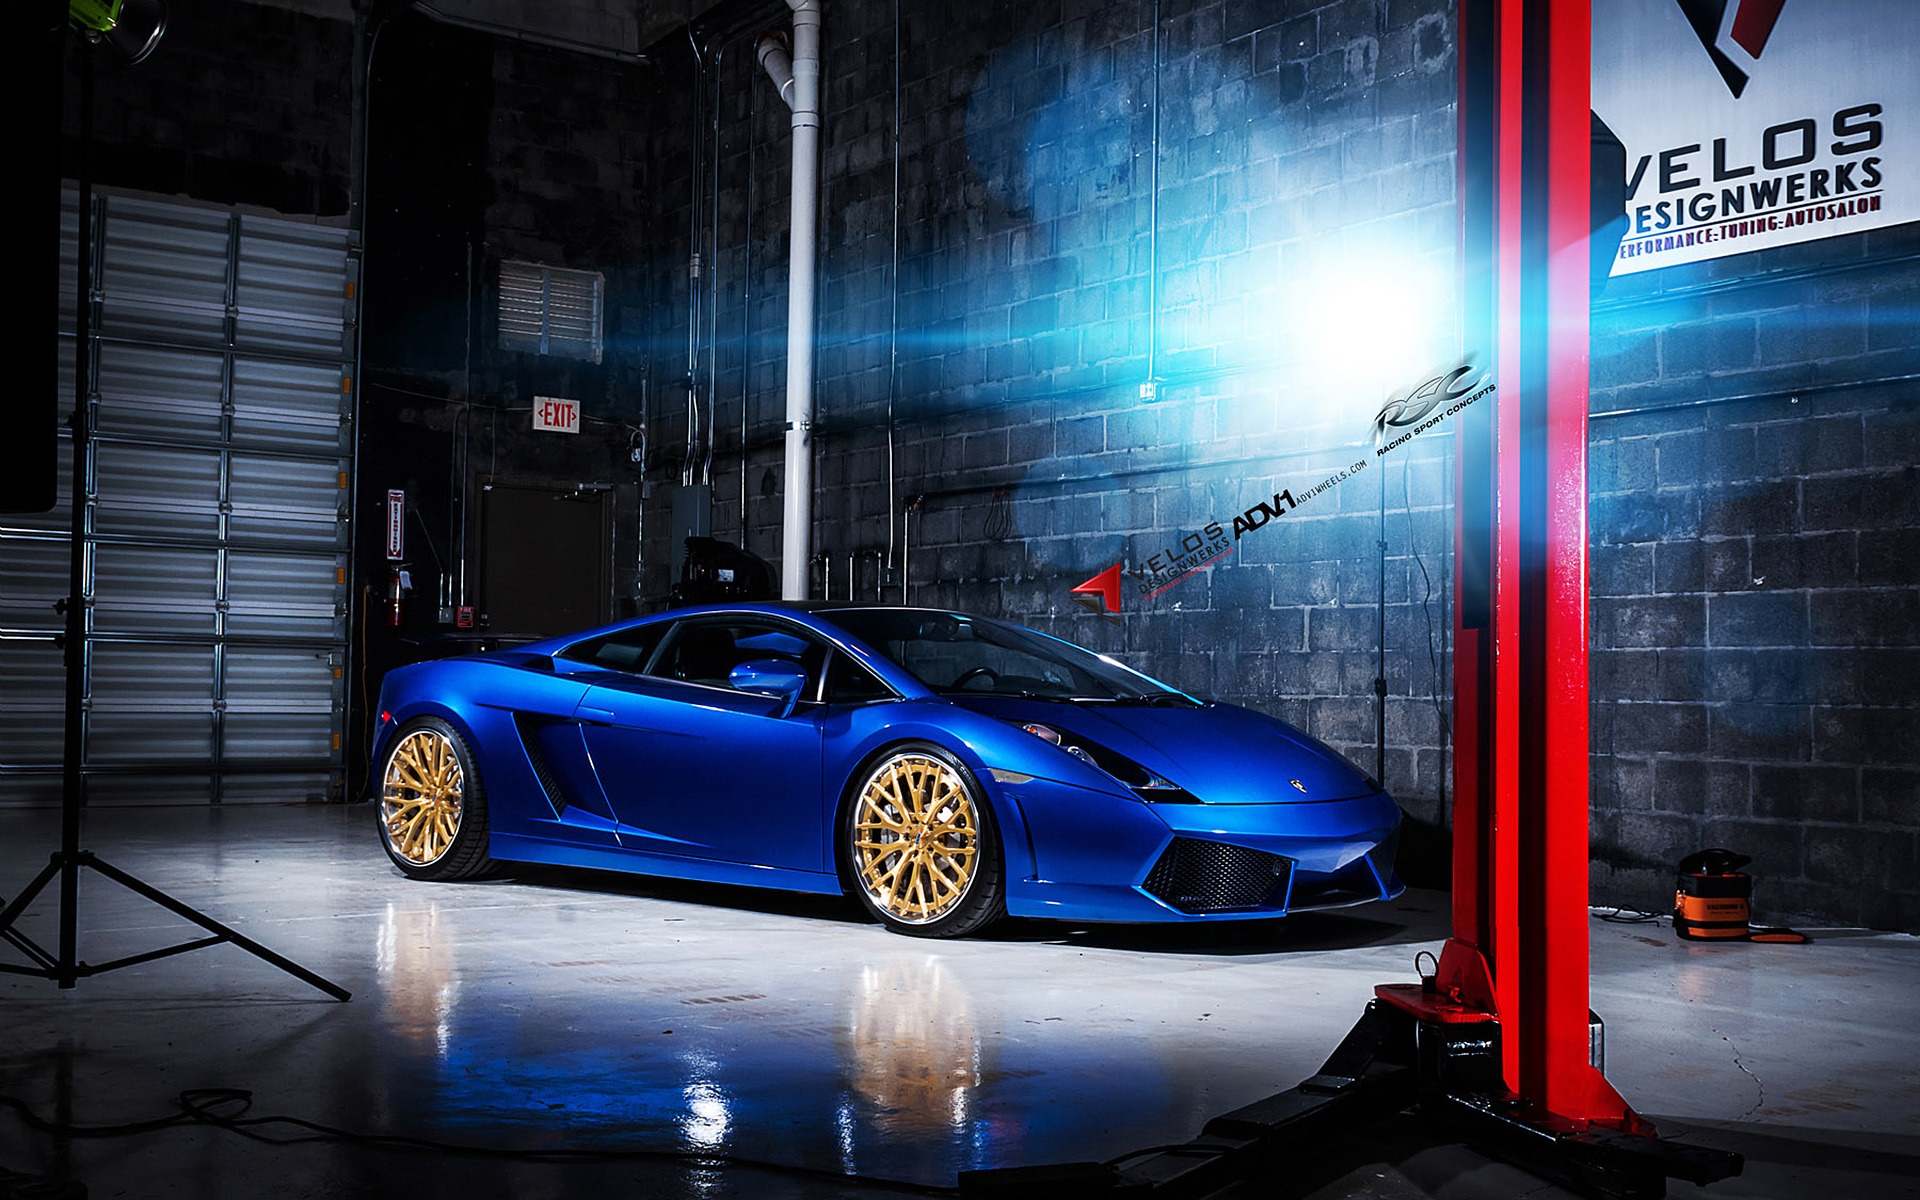 Blue Lamborghini Gallardo ADV10 for 1920 x 1200 widescreen resolution